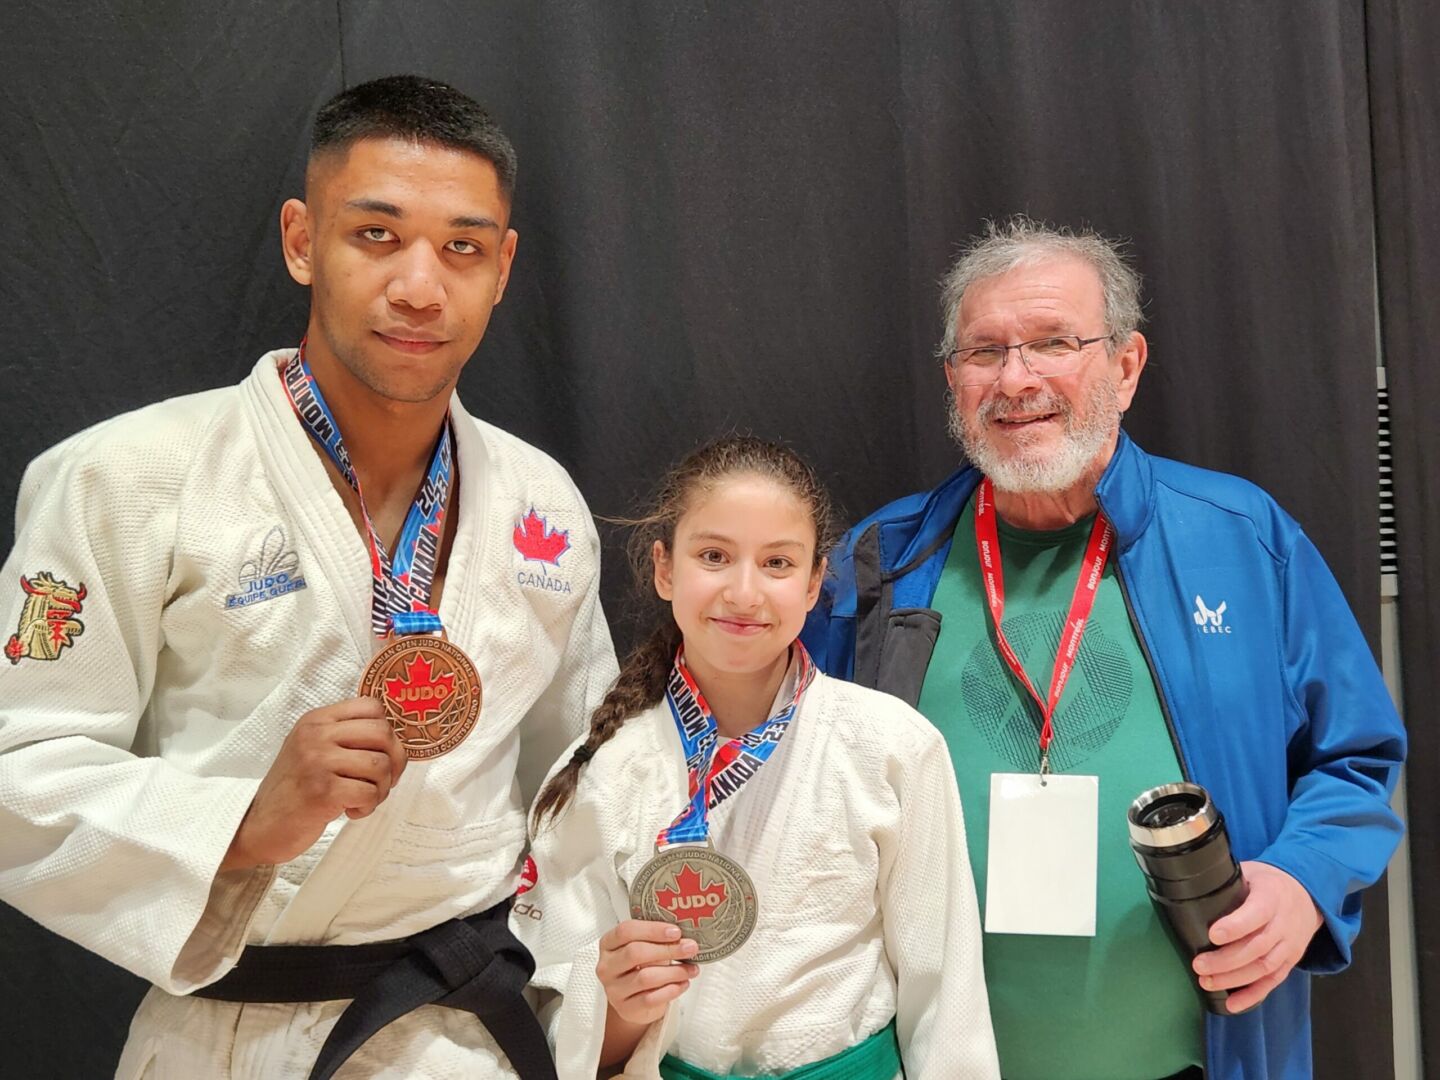 Sur la photo, les médaillés du Club de judo de Saint-Hyacinthe au championnat canadien, Faniry Andriamanana et Dalia Benhamou, en compagnie de l’entraîneur Louis Graveline. Photo gracieuseté